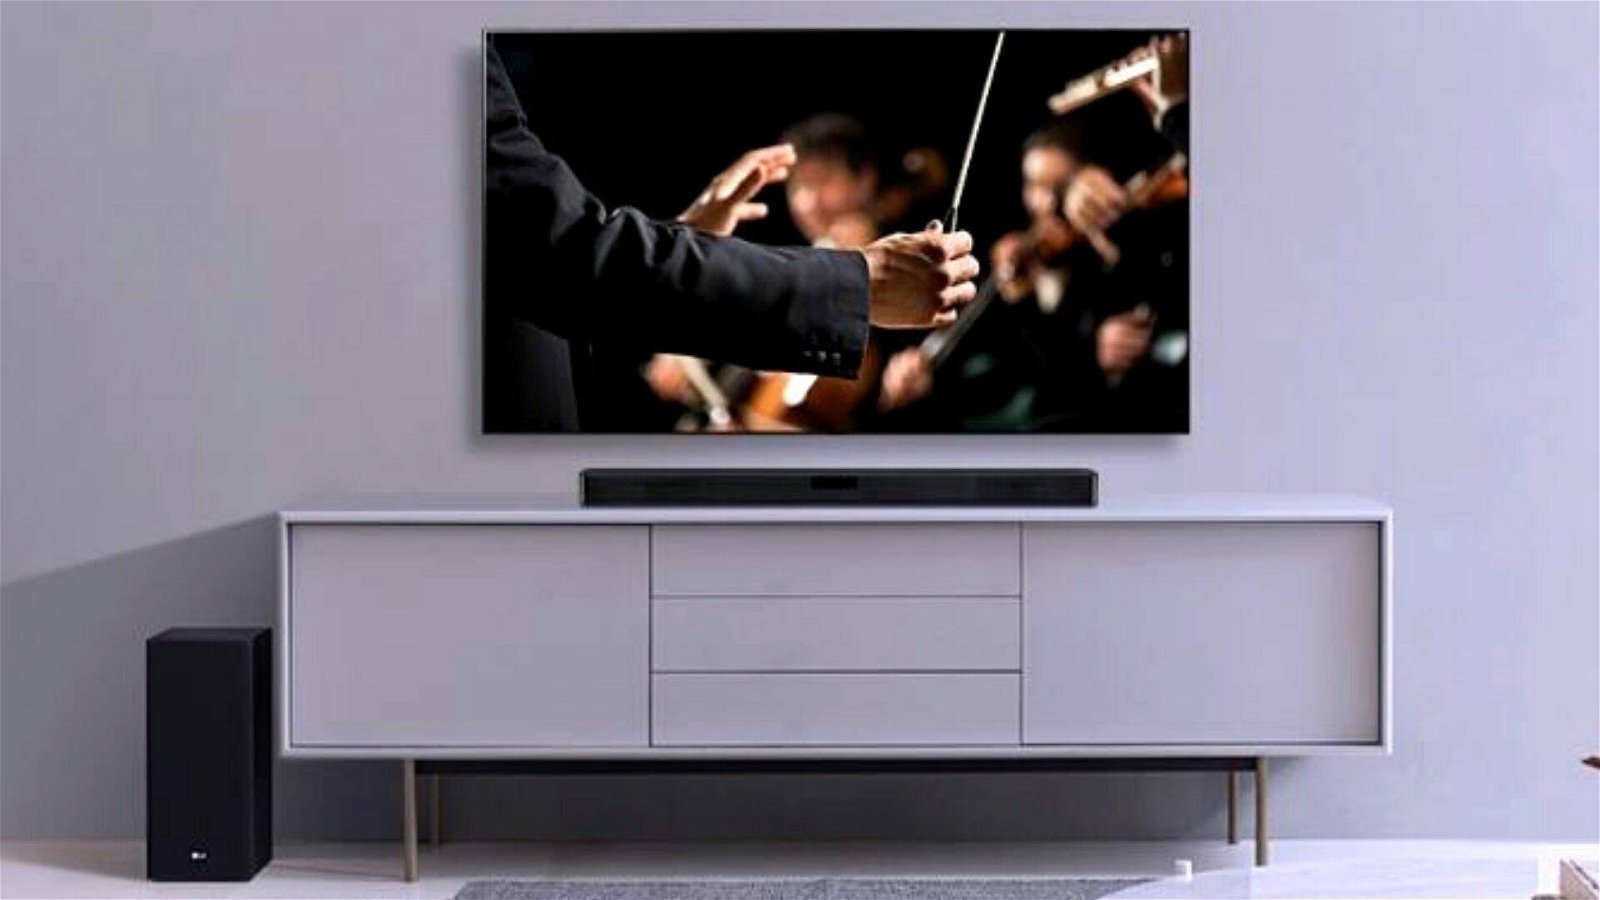 Immagine di Partono le nuove offerte Amazon sulle smart TV: sconti fino a 400€!